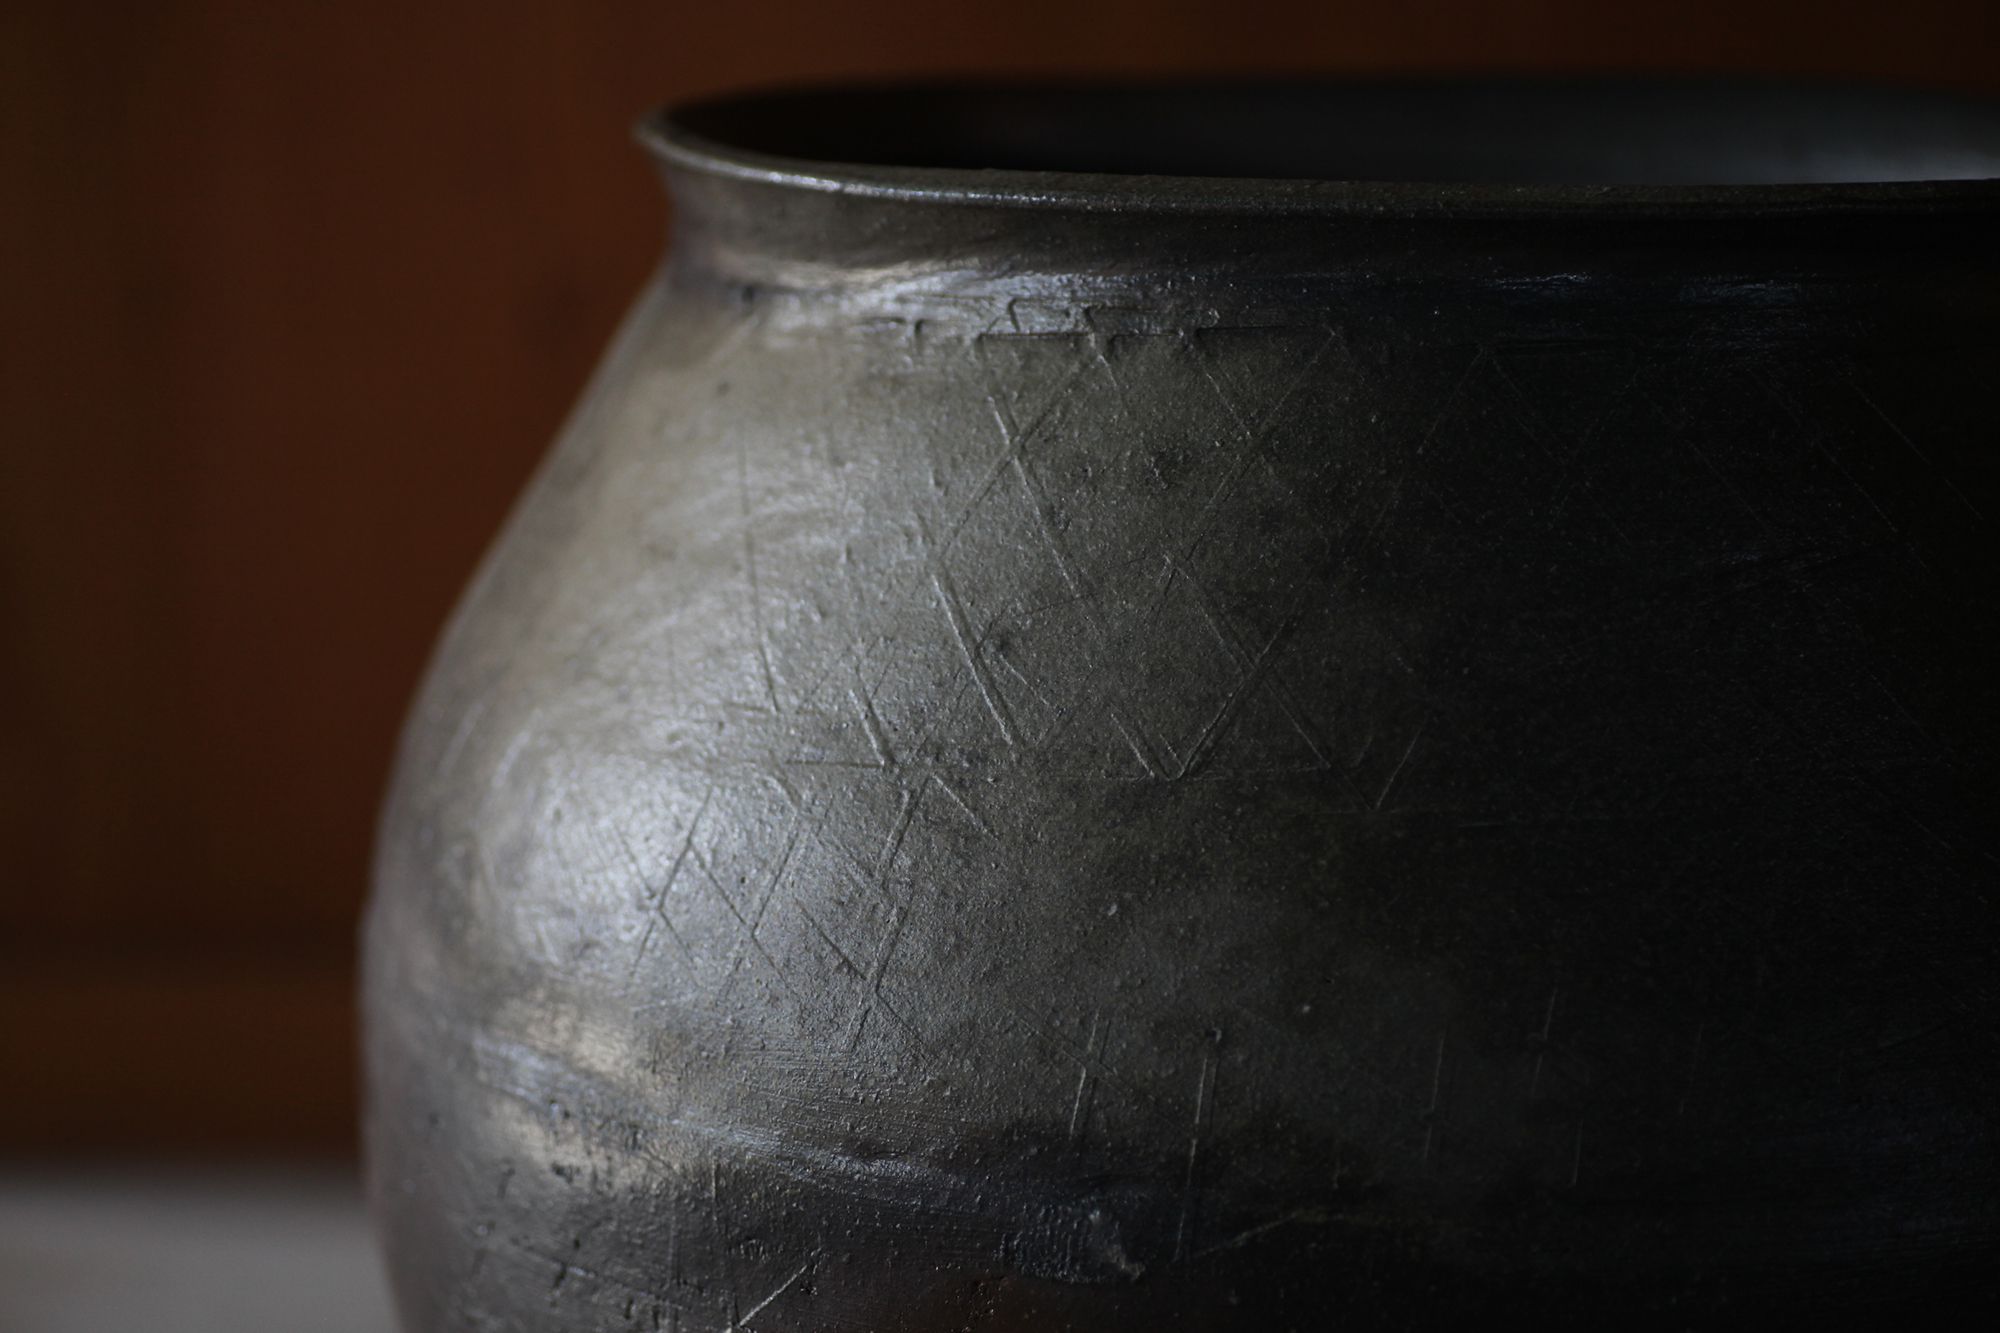 常滑 鯉江明／常滑山土叩き壺　鯉江は、地元常滑での中世古窯発掘調査への参加が契機となり、作家を志す。